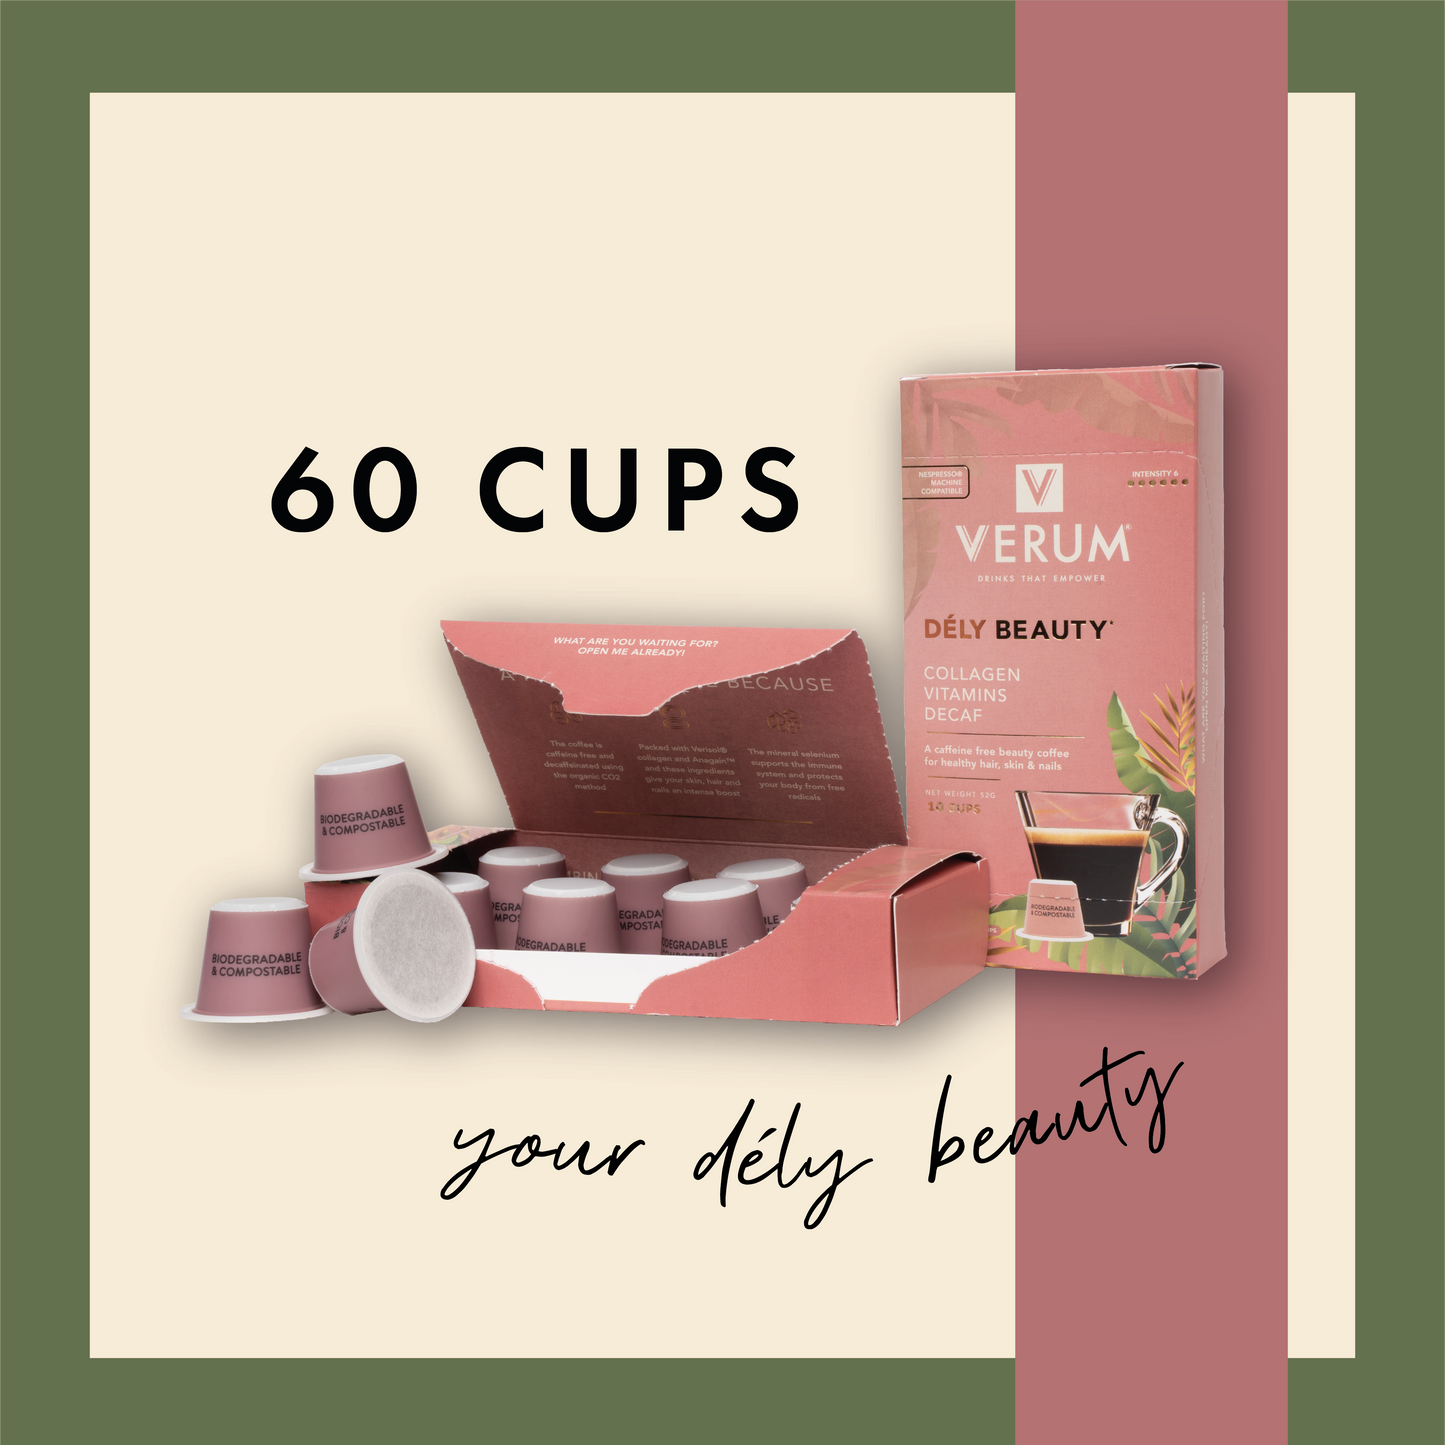 Verum Dély Beauty 60 cups